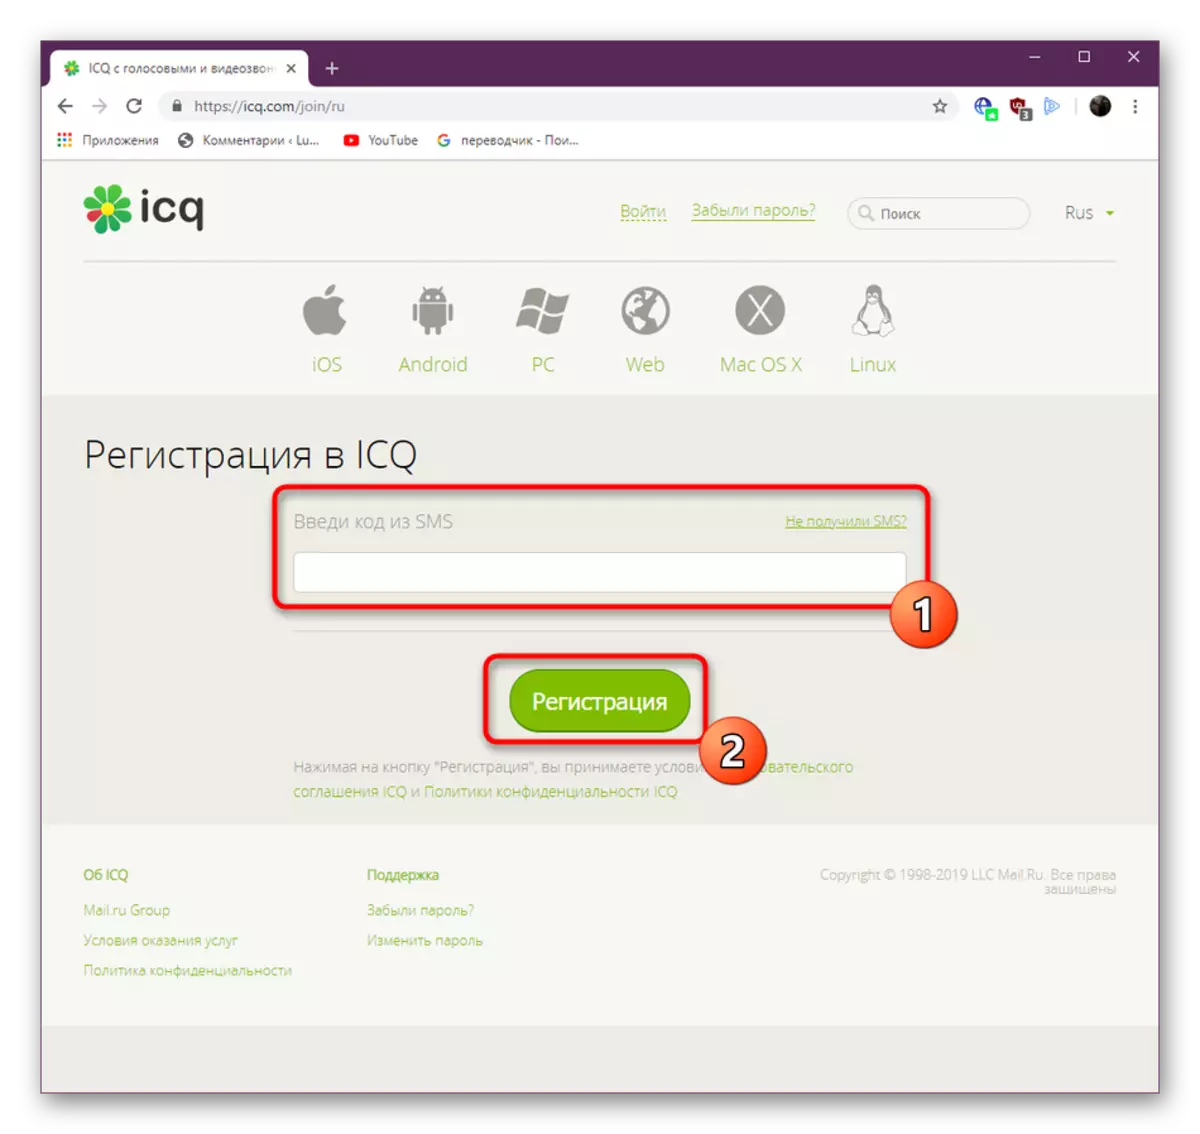 공식 웹 사이트에서 ICQ 등록 코드 수신